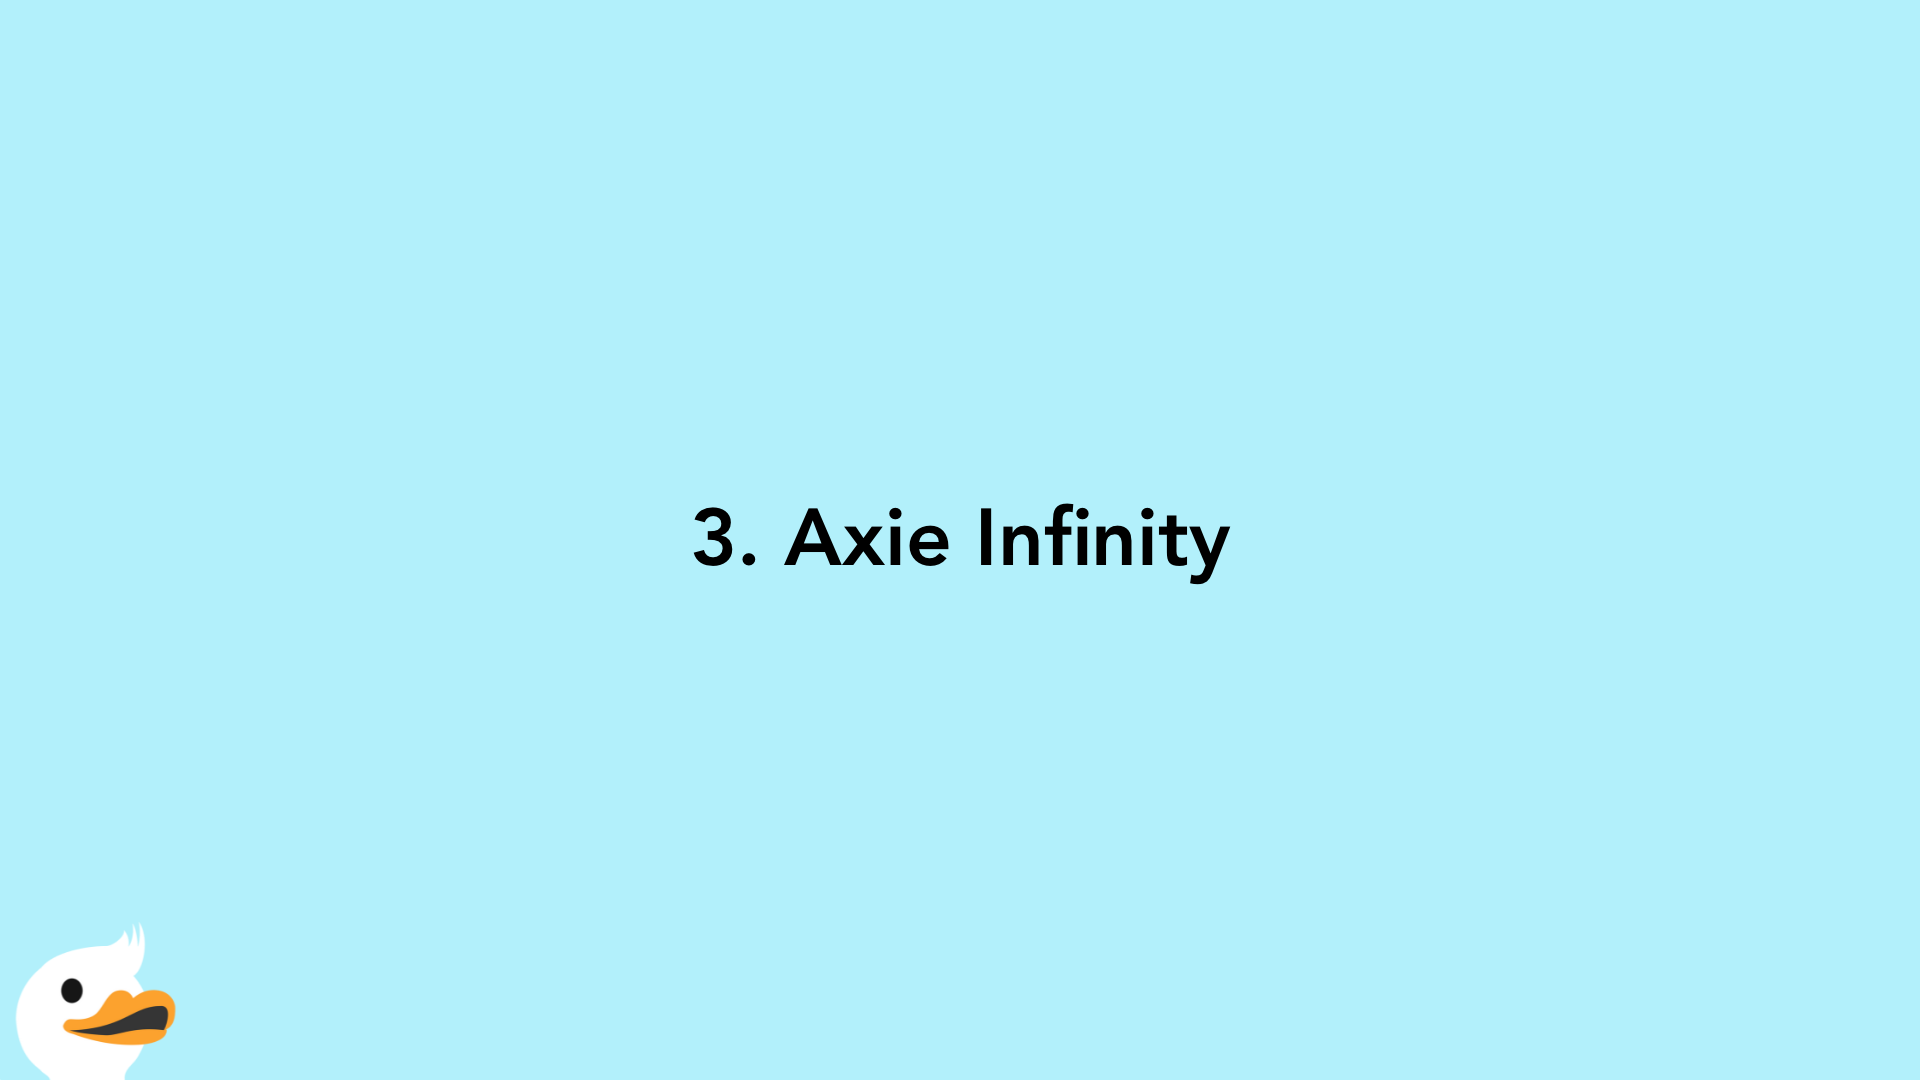 3. Axie Infinity